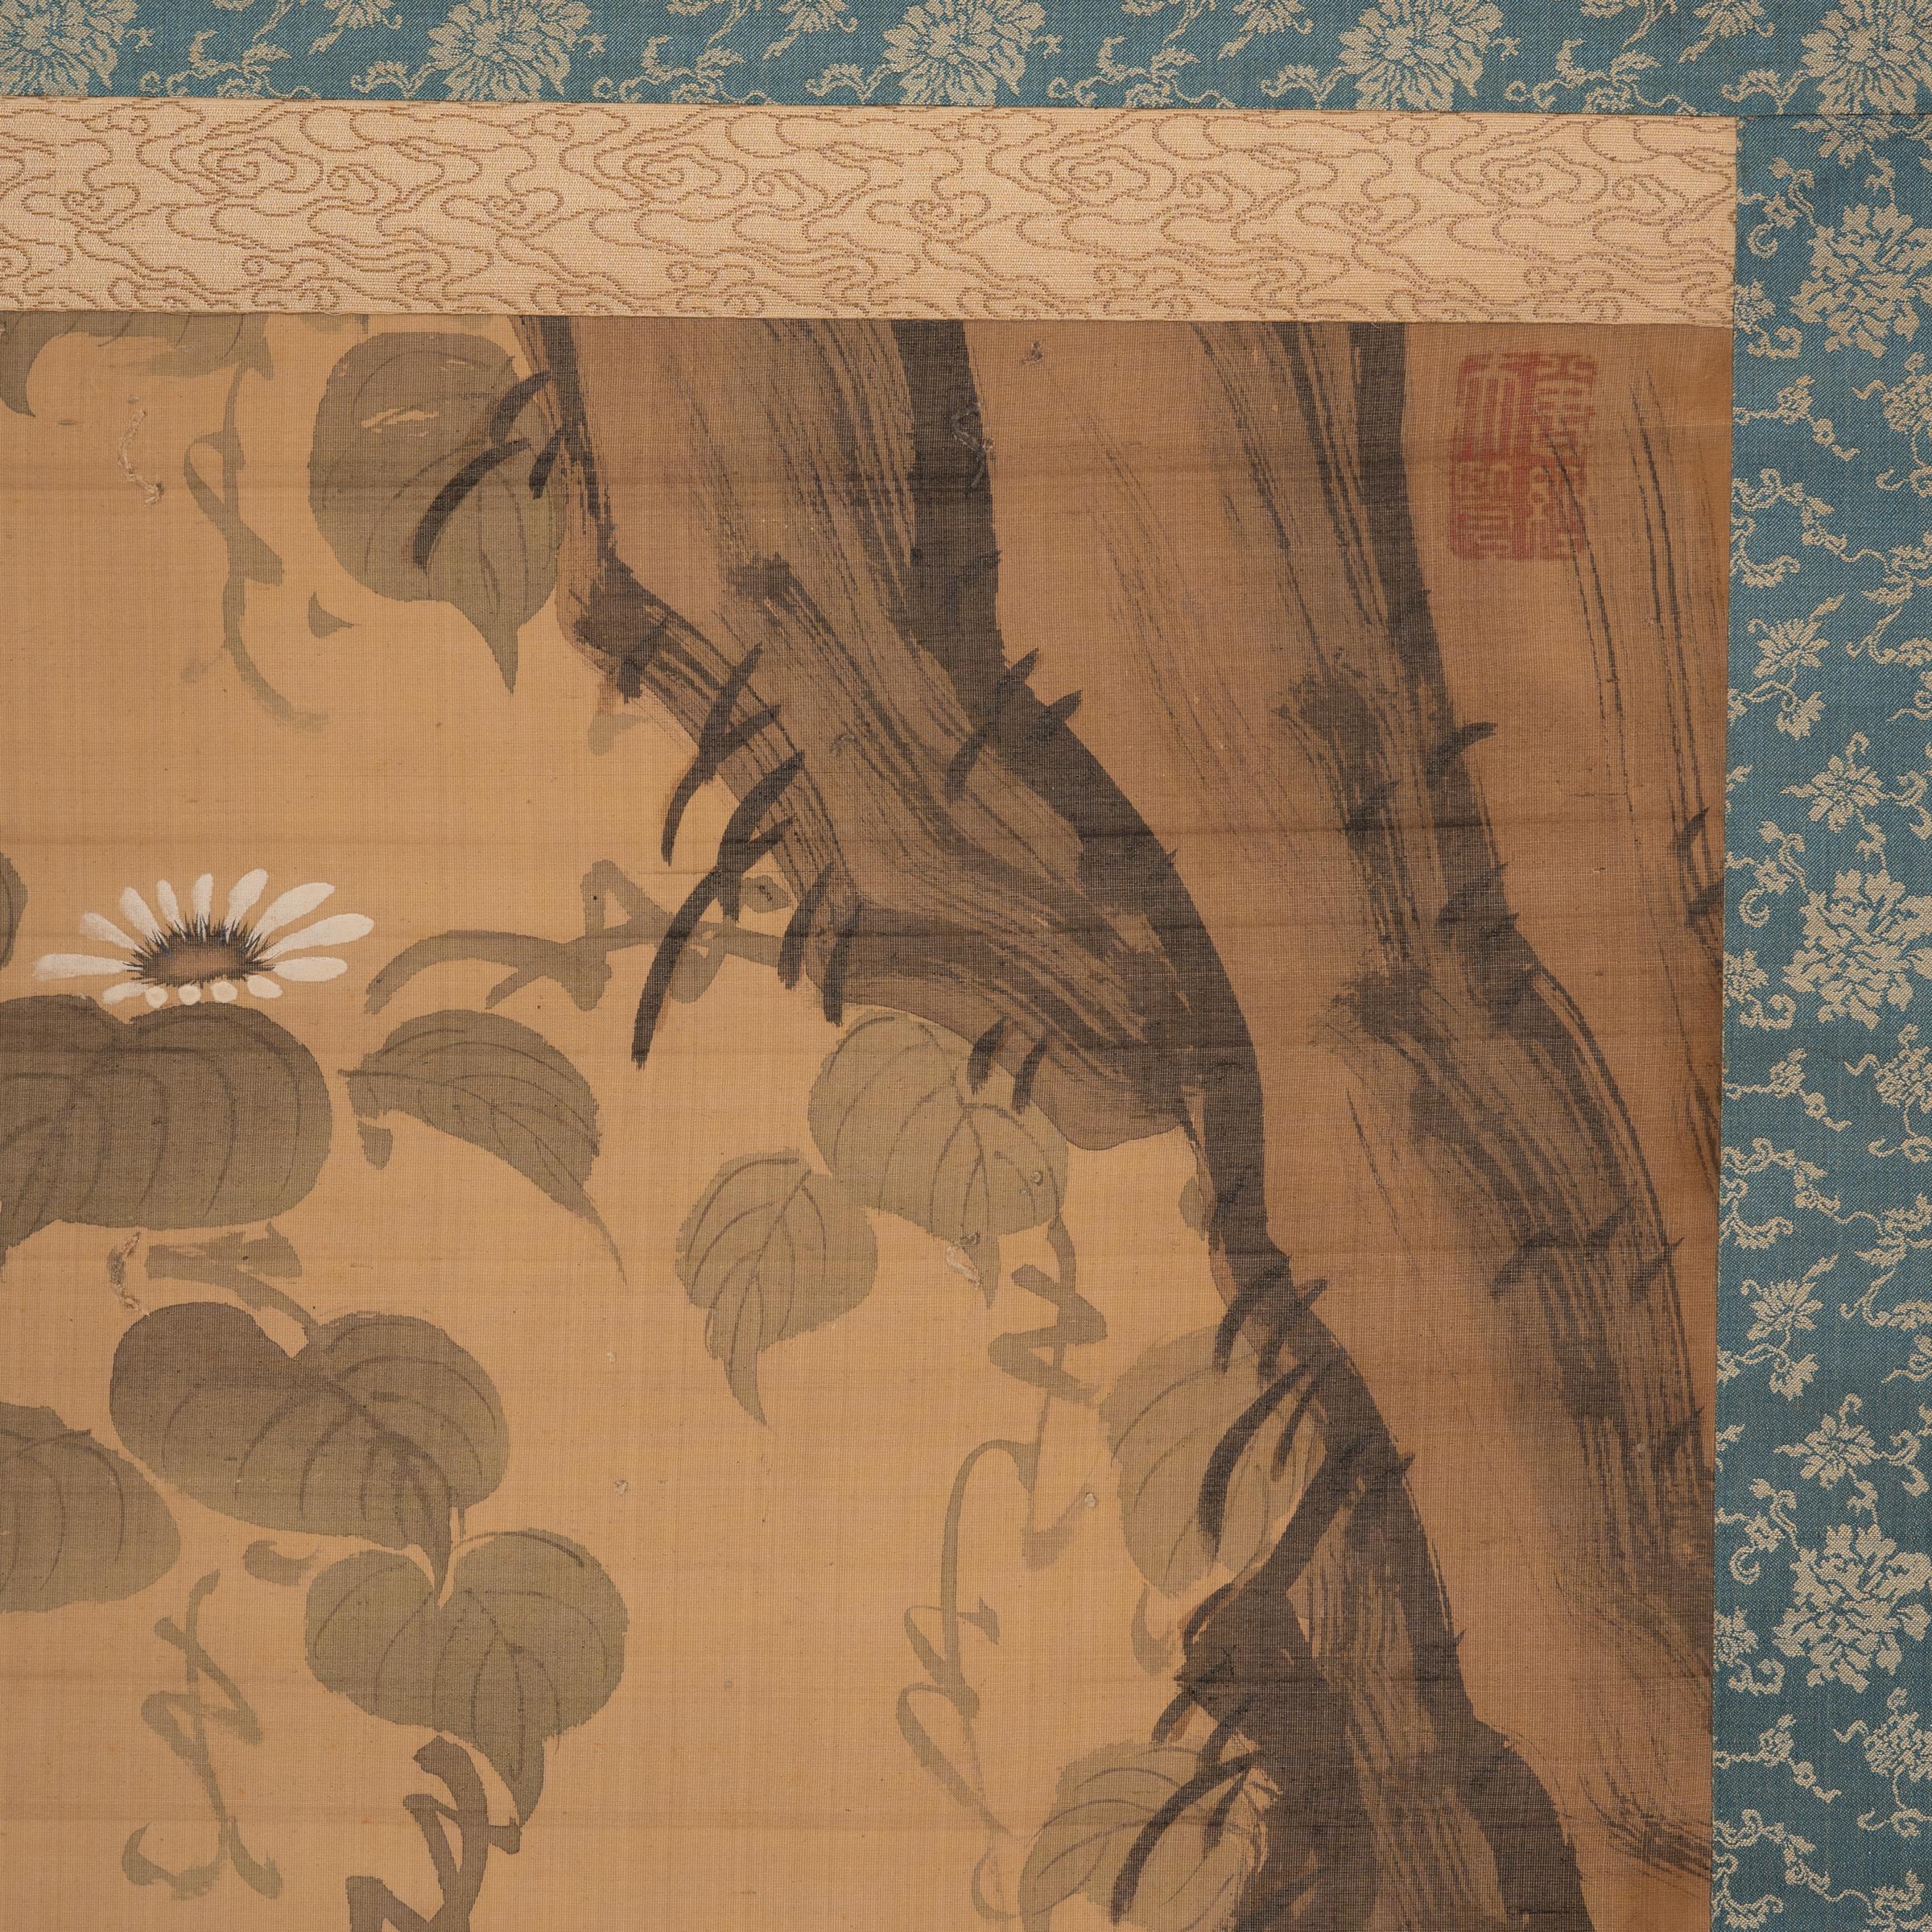 Bien que la peinture occidentale ait été initialement adoptée pendant la période Meiji (1868-1912), les artistes ont fait revivre les styles de peinture traditionnels en cherchant à créer un style japonais moderne ayant des racines dans le passé. Ce